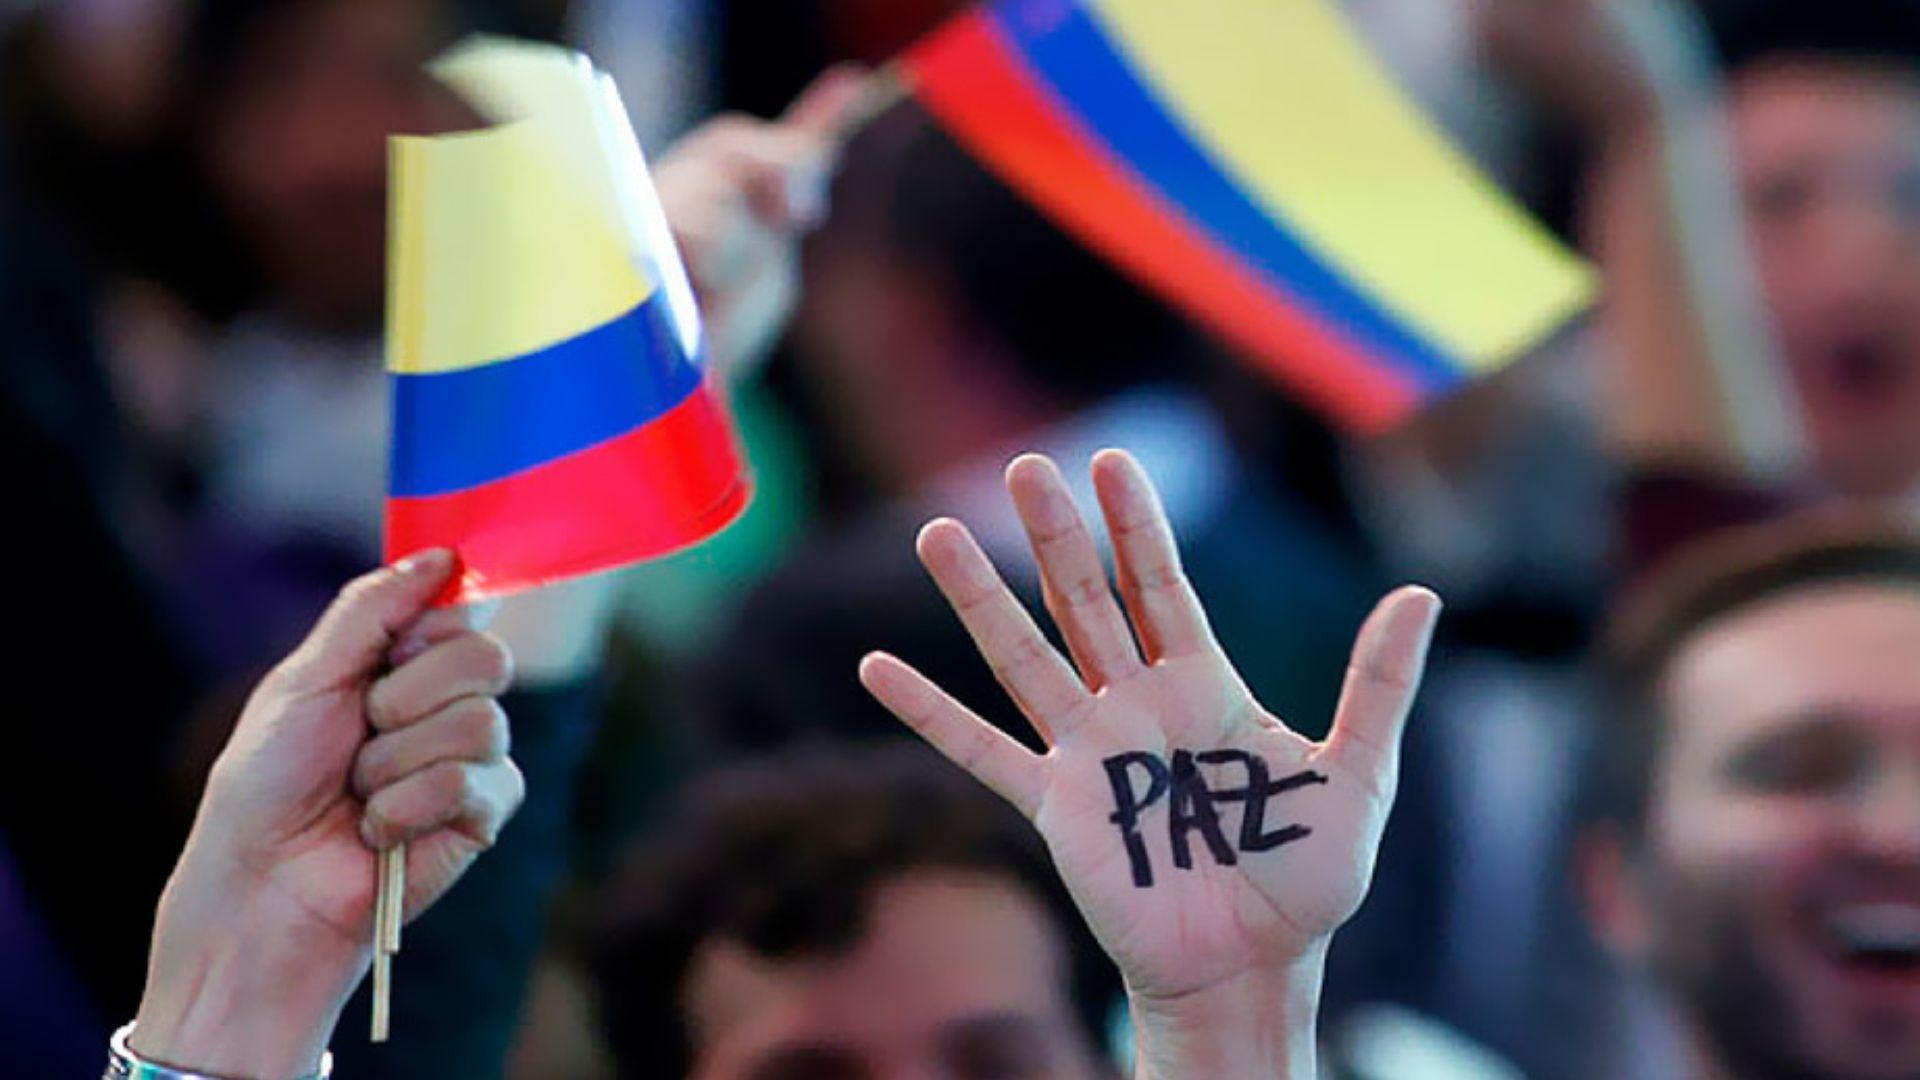 O que está acontecendo com a paz na Colômbia?